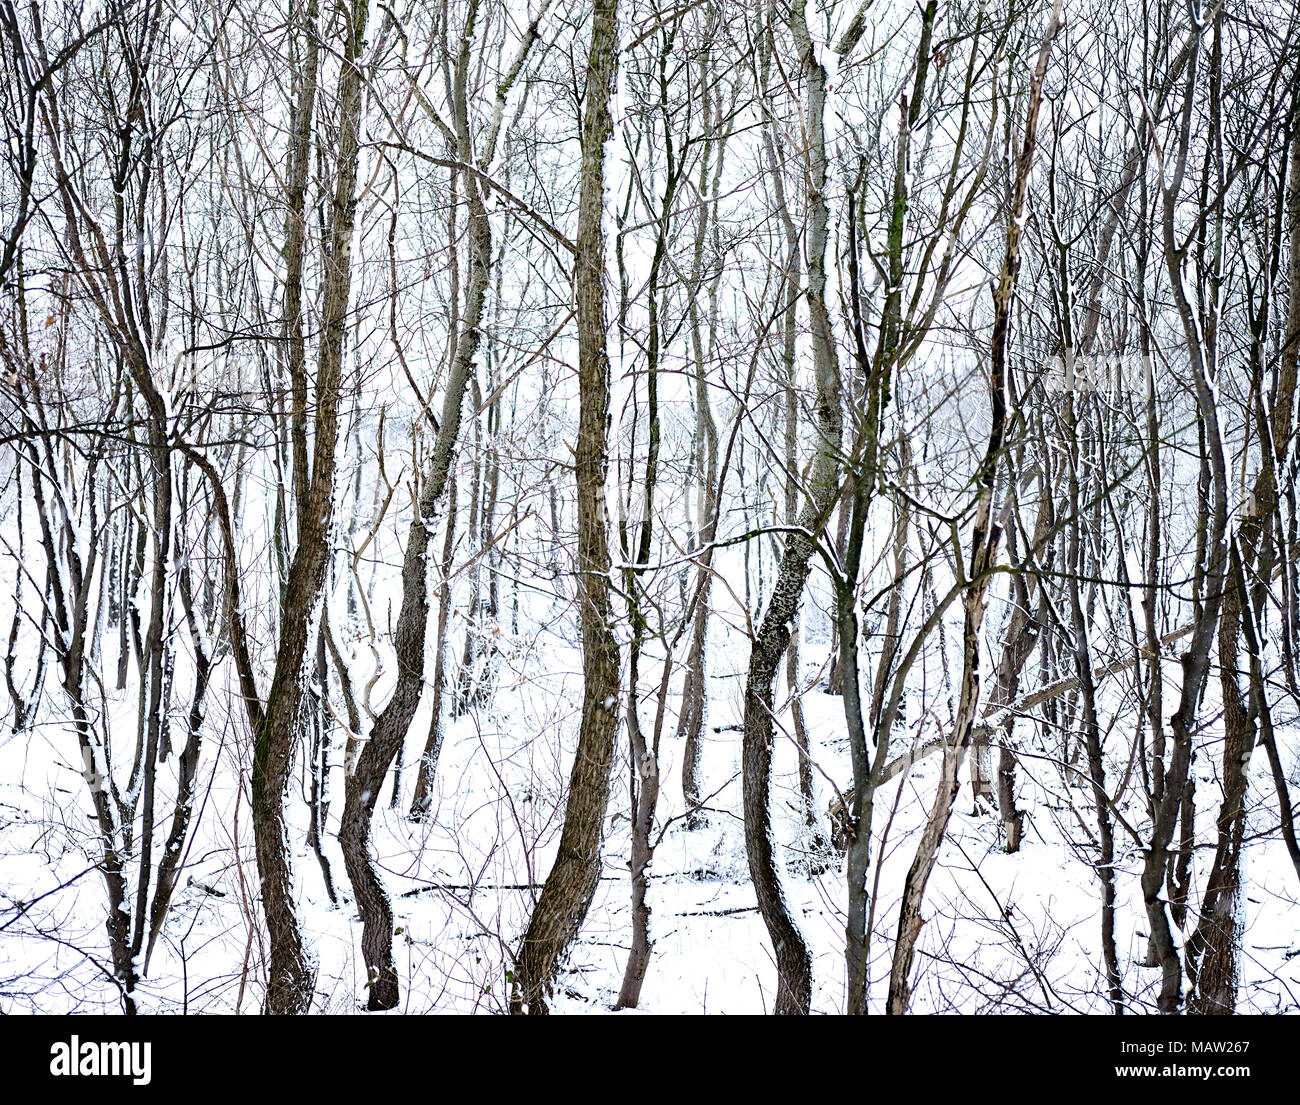 Wald Landschaft mit Bäumen mit Schnee im Winter in den Dünen an der Küste von Den Haag, Niederlande. Westduinpark ist eine Dünenlandschaft Stockfoto